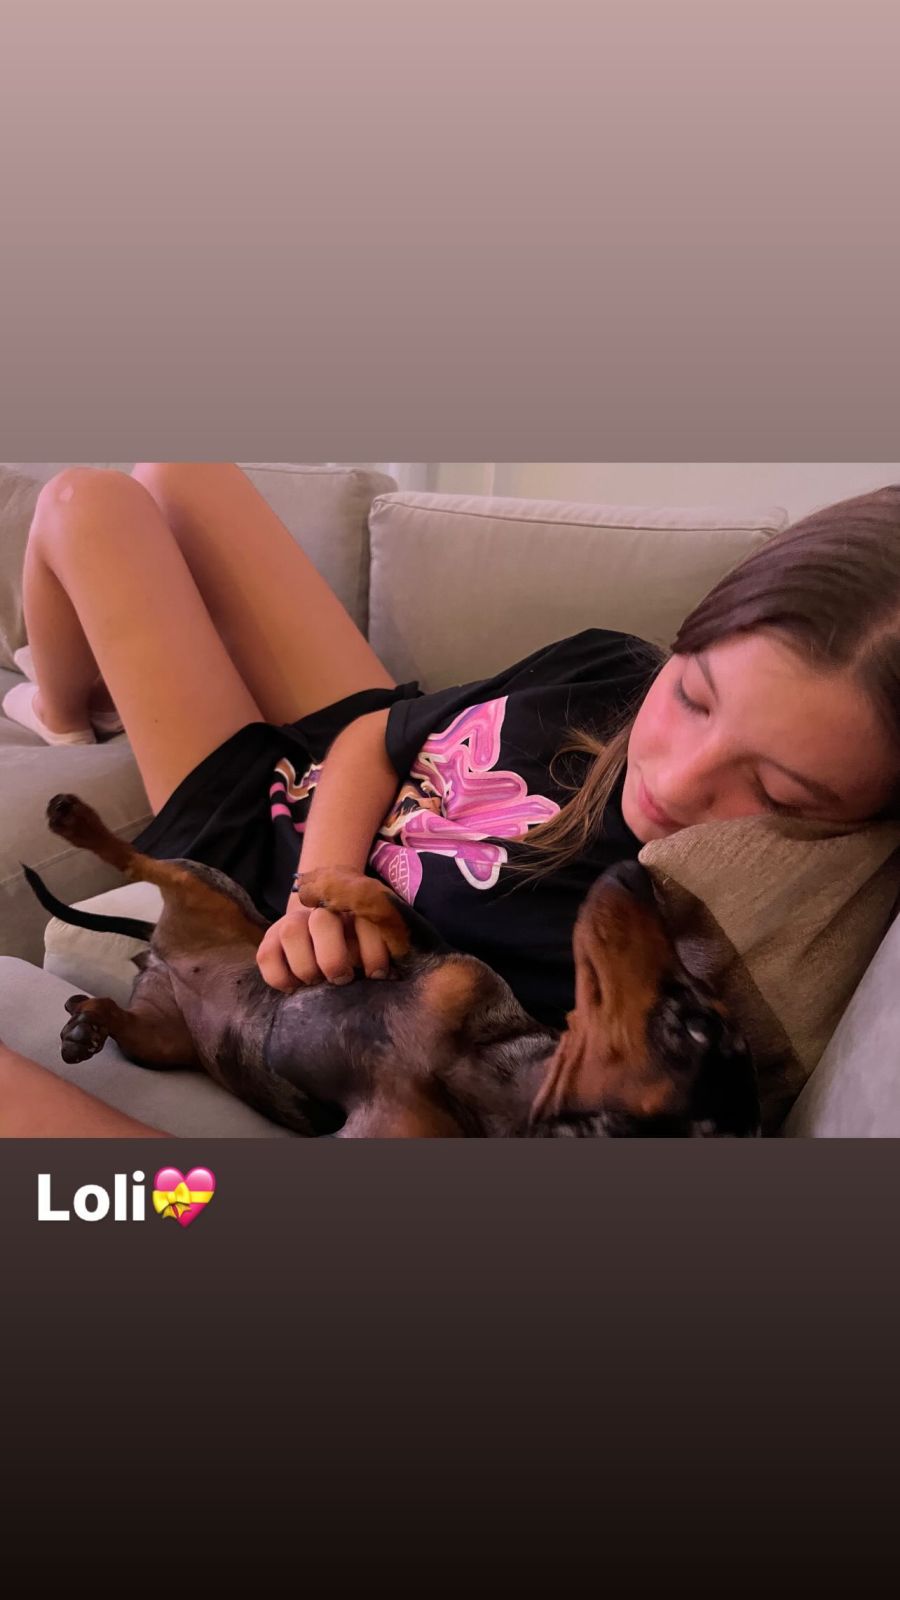 Las tiernas fotos de Allegra Cubero con su mascota Loli